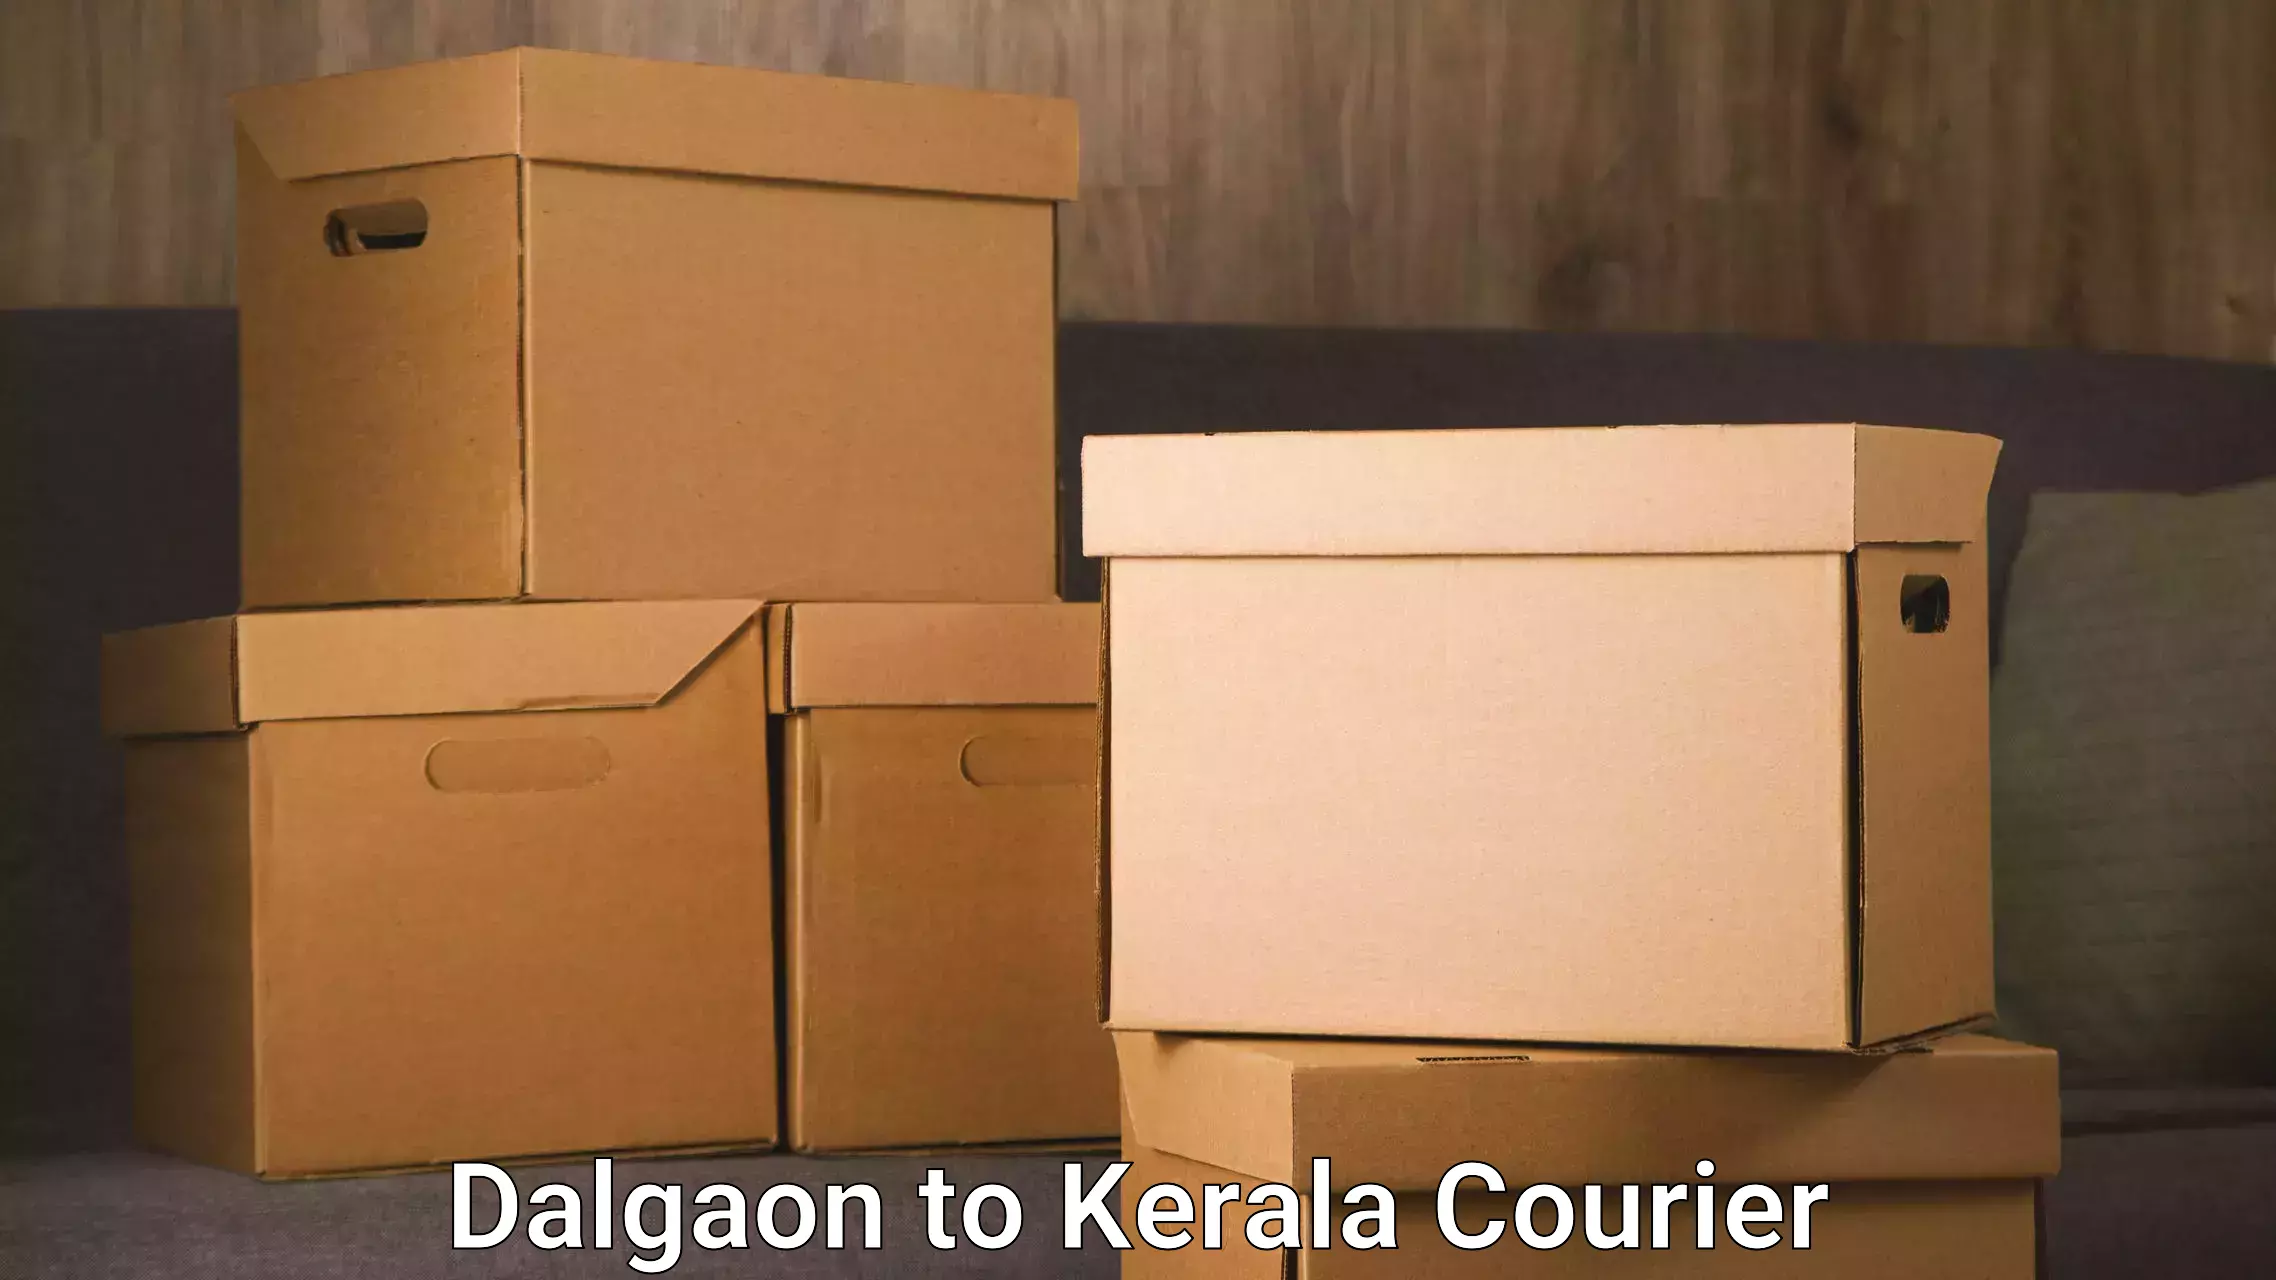 Express courier facilities Dalgaon to Munnar